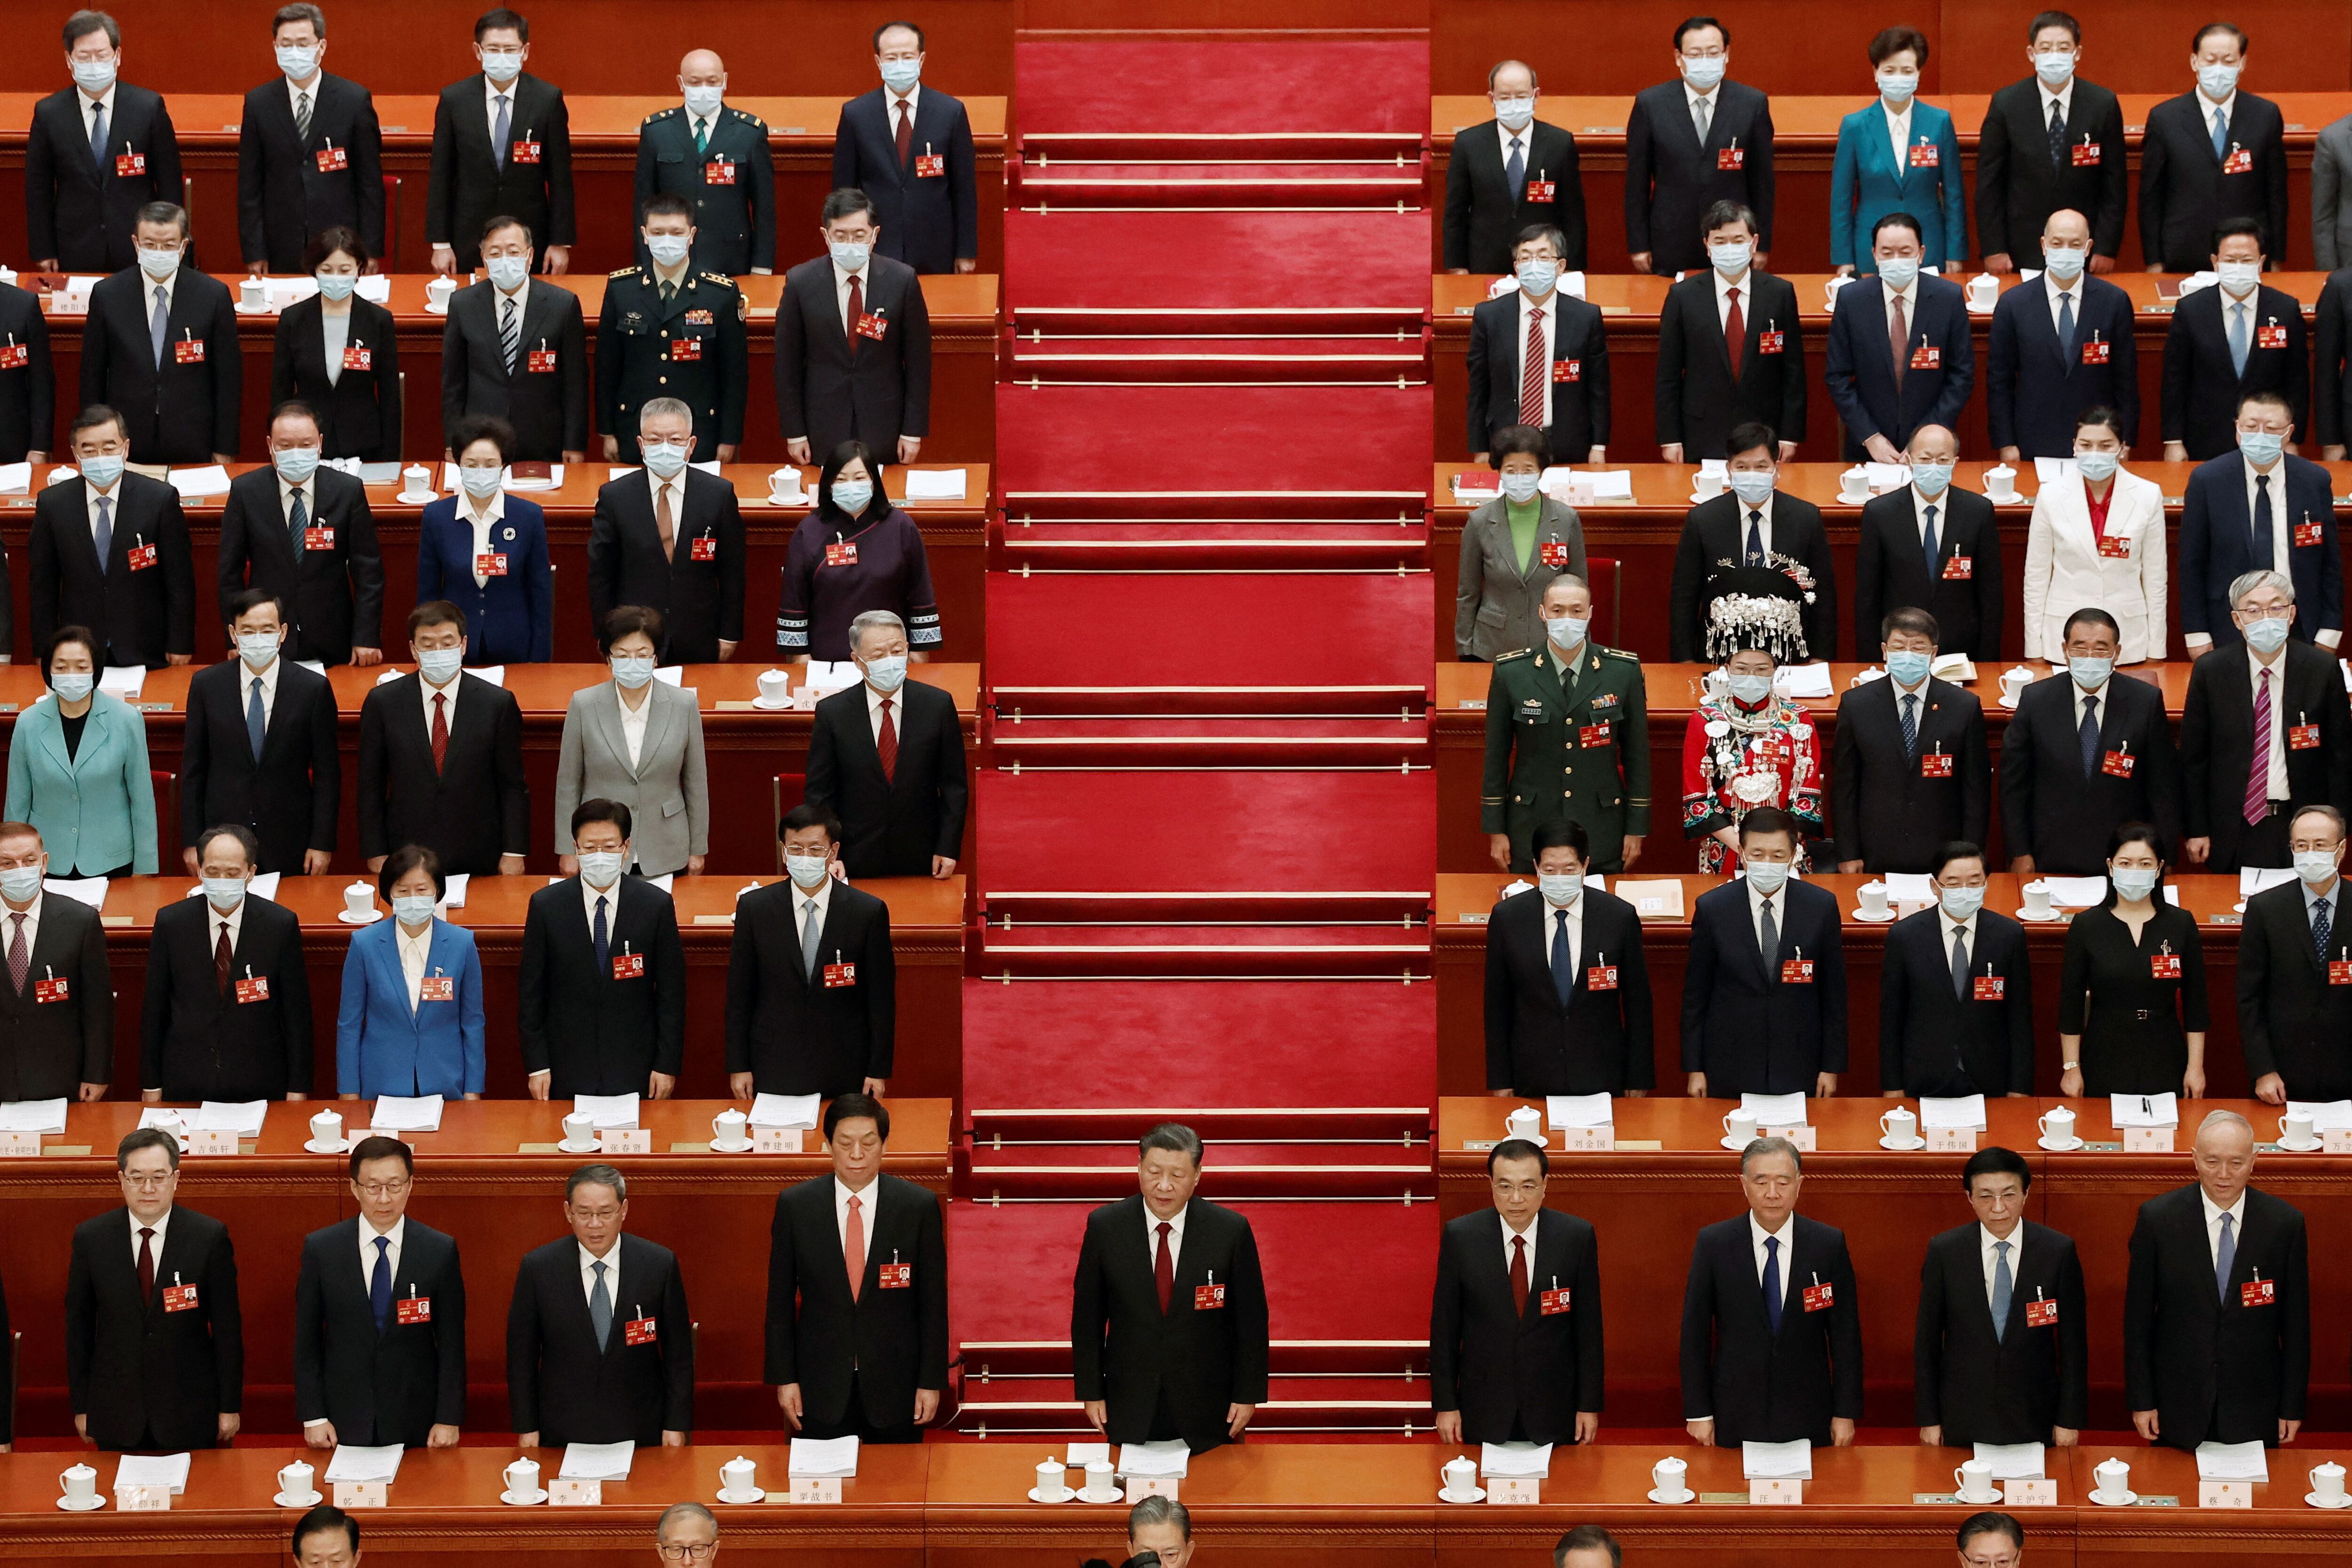 El régimen chino amenazó a Taiwán y aseguró que “luchará decididamente” contra su independencia. (REUTERS)